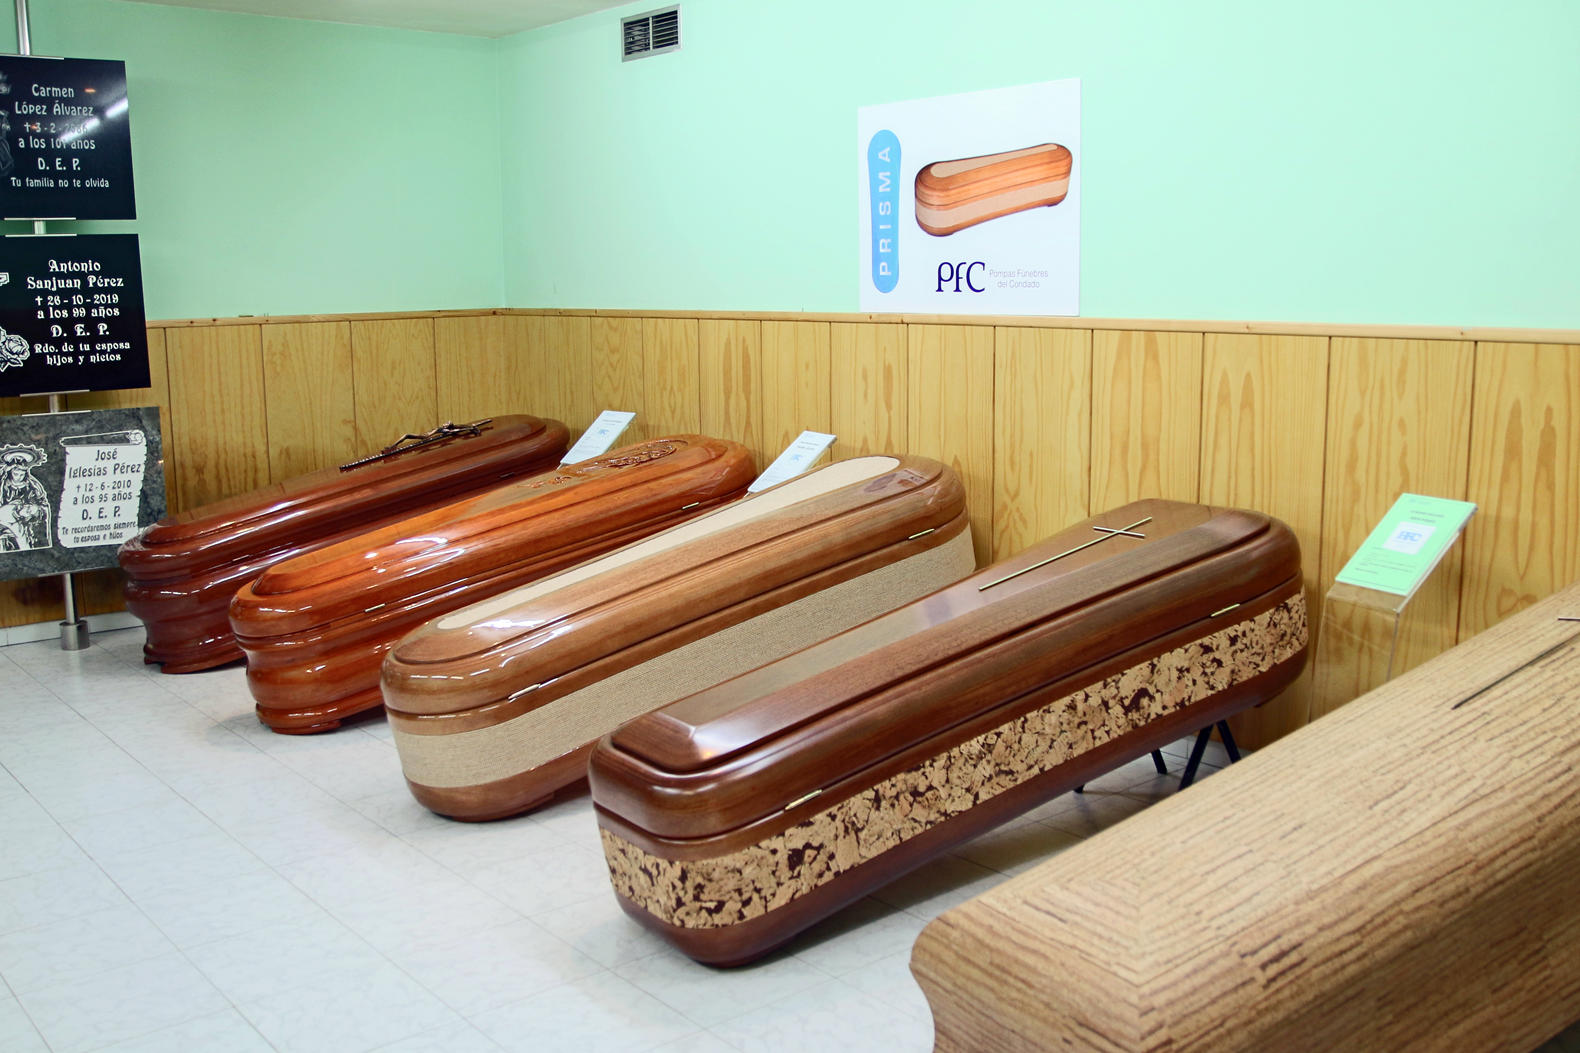 Images Pompas Fúnebres del Condado